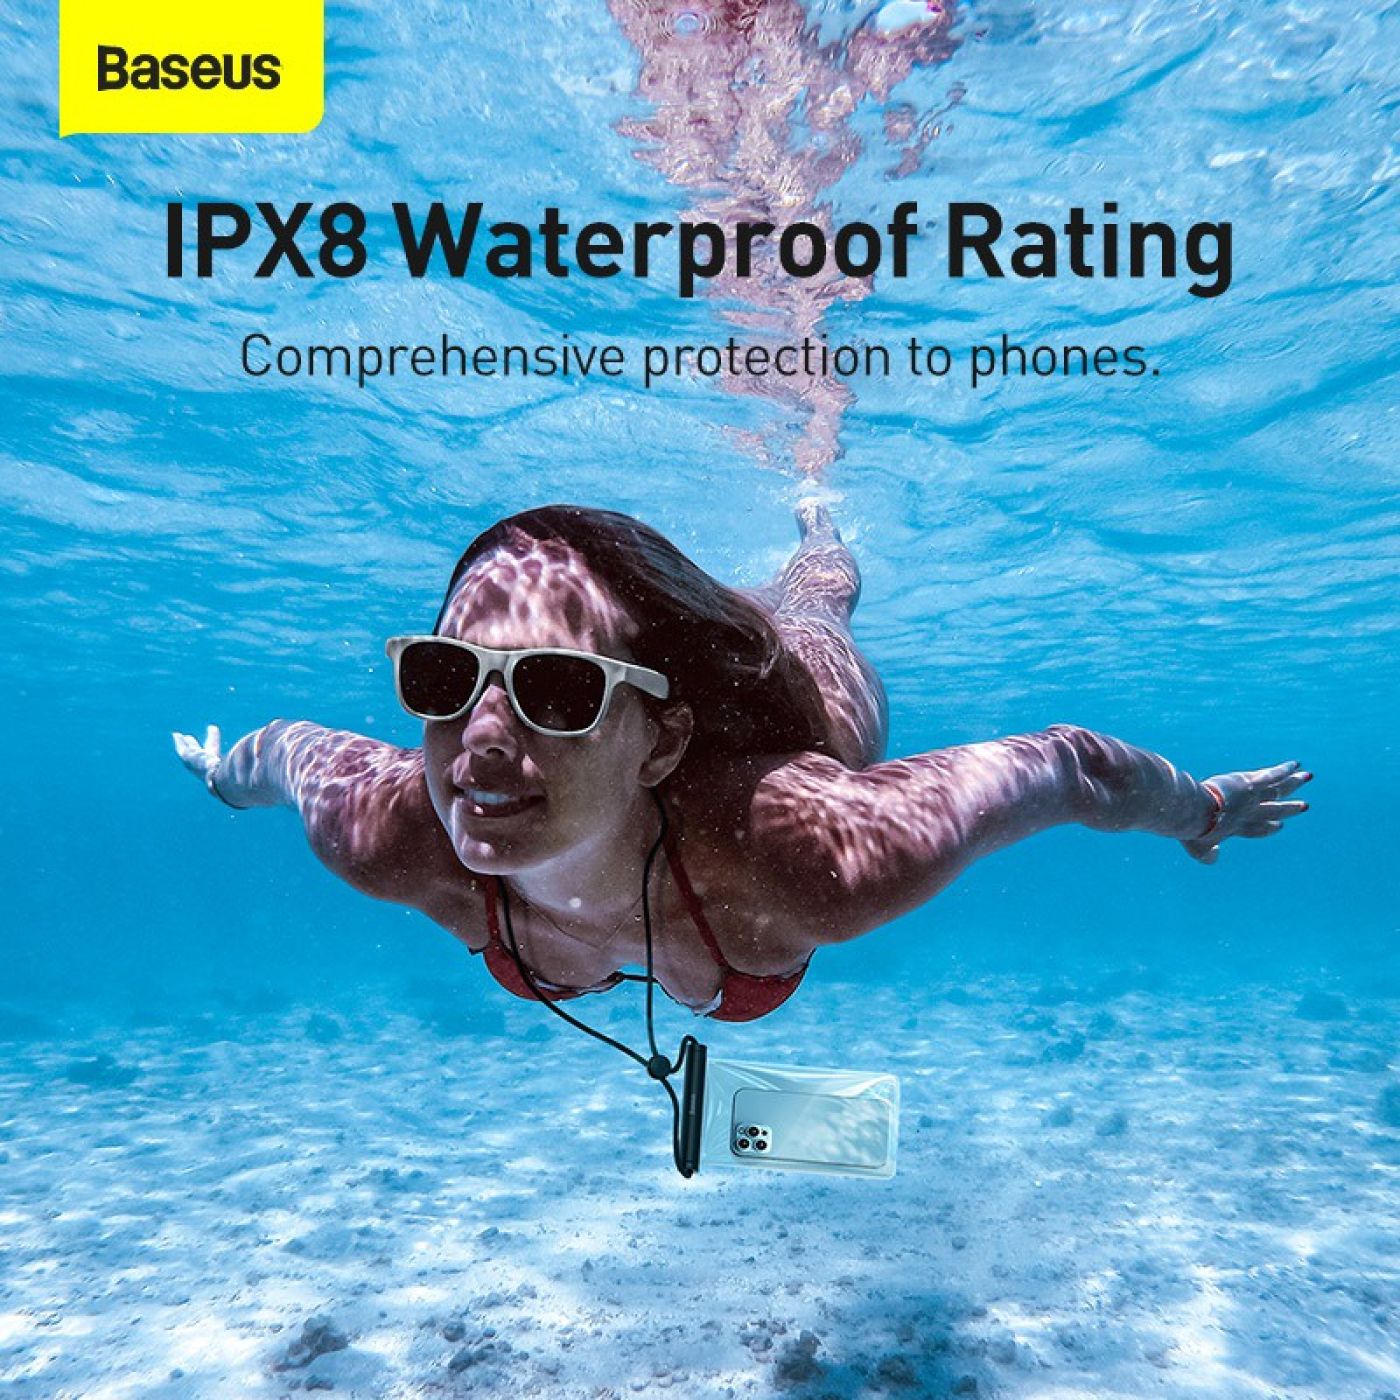 Túi Chống Nước Điện Thoại Baseus Cylinder Slide-cover Waterproof Bag Pro IPX8